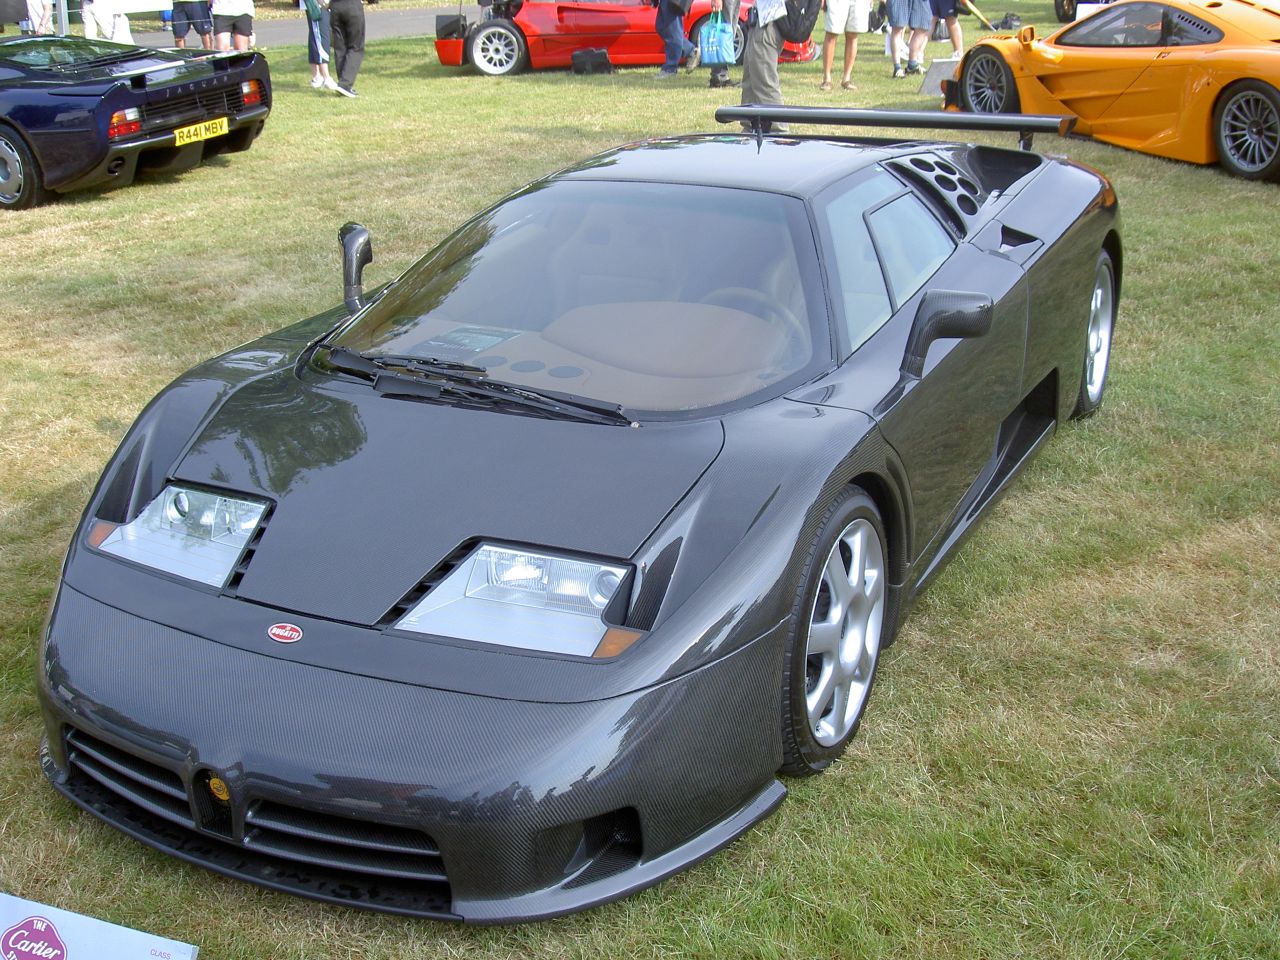 Bugatti EB110 SS Veyron